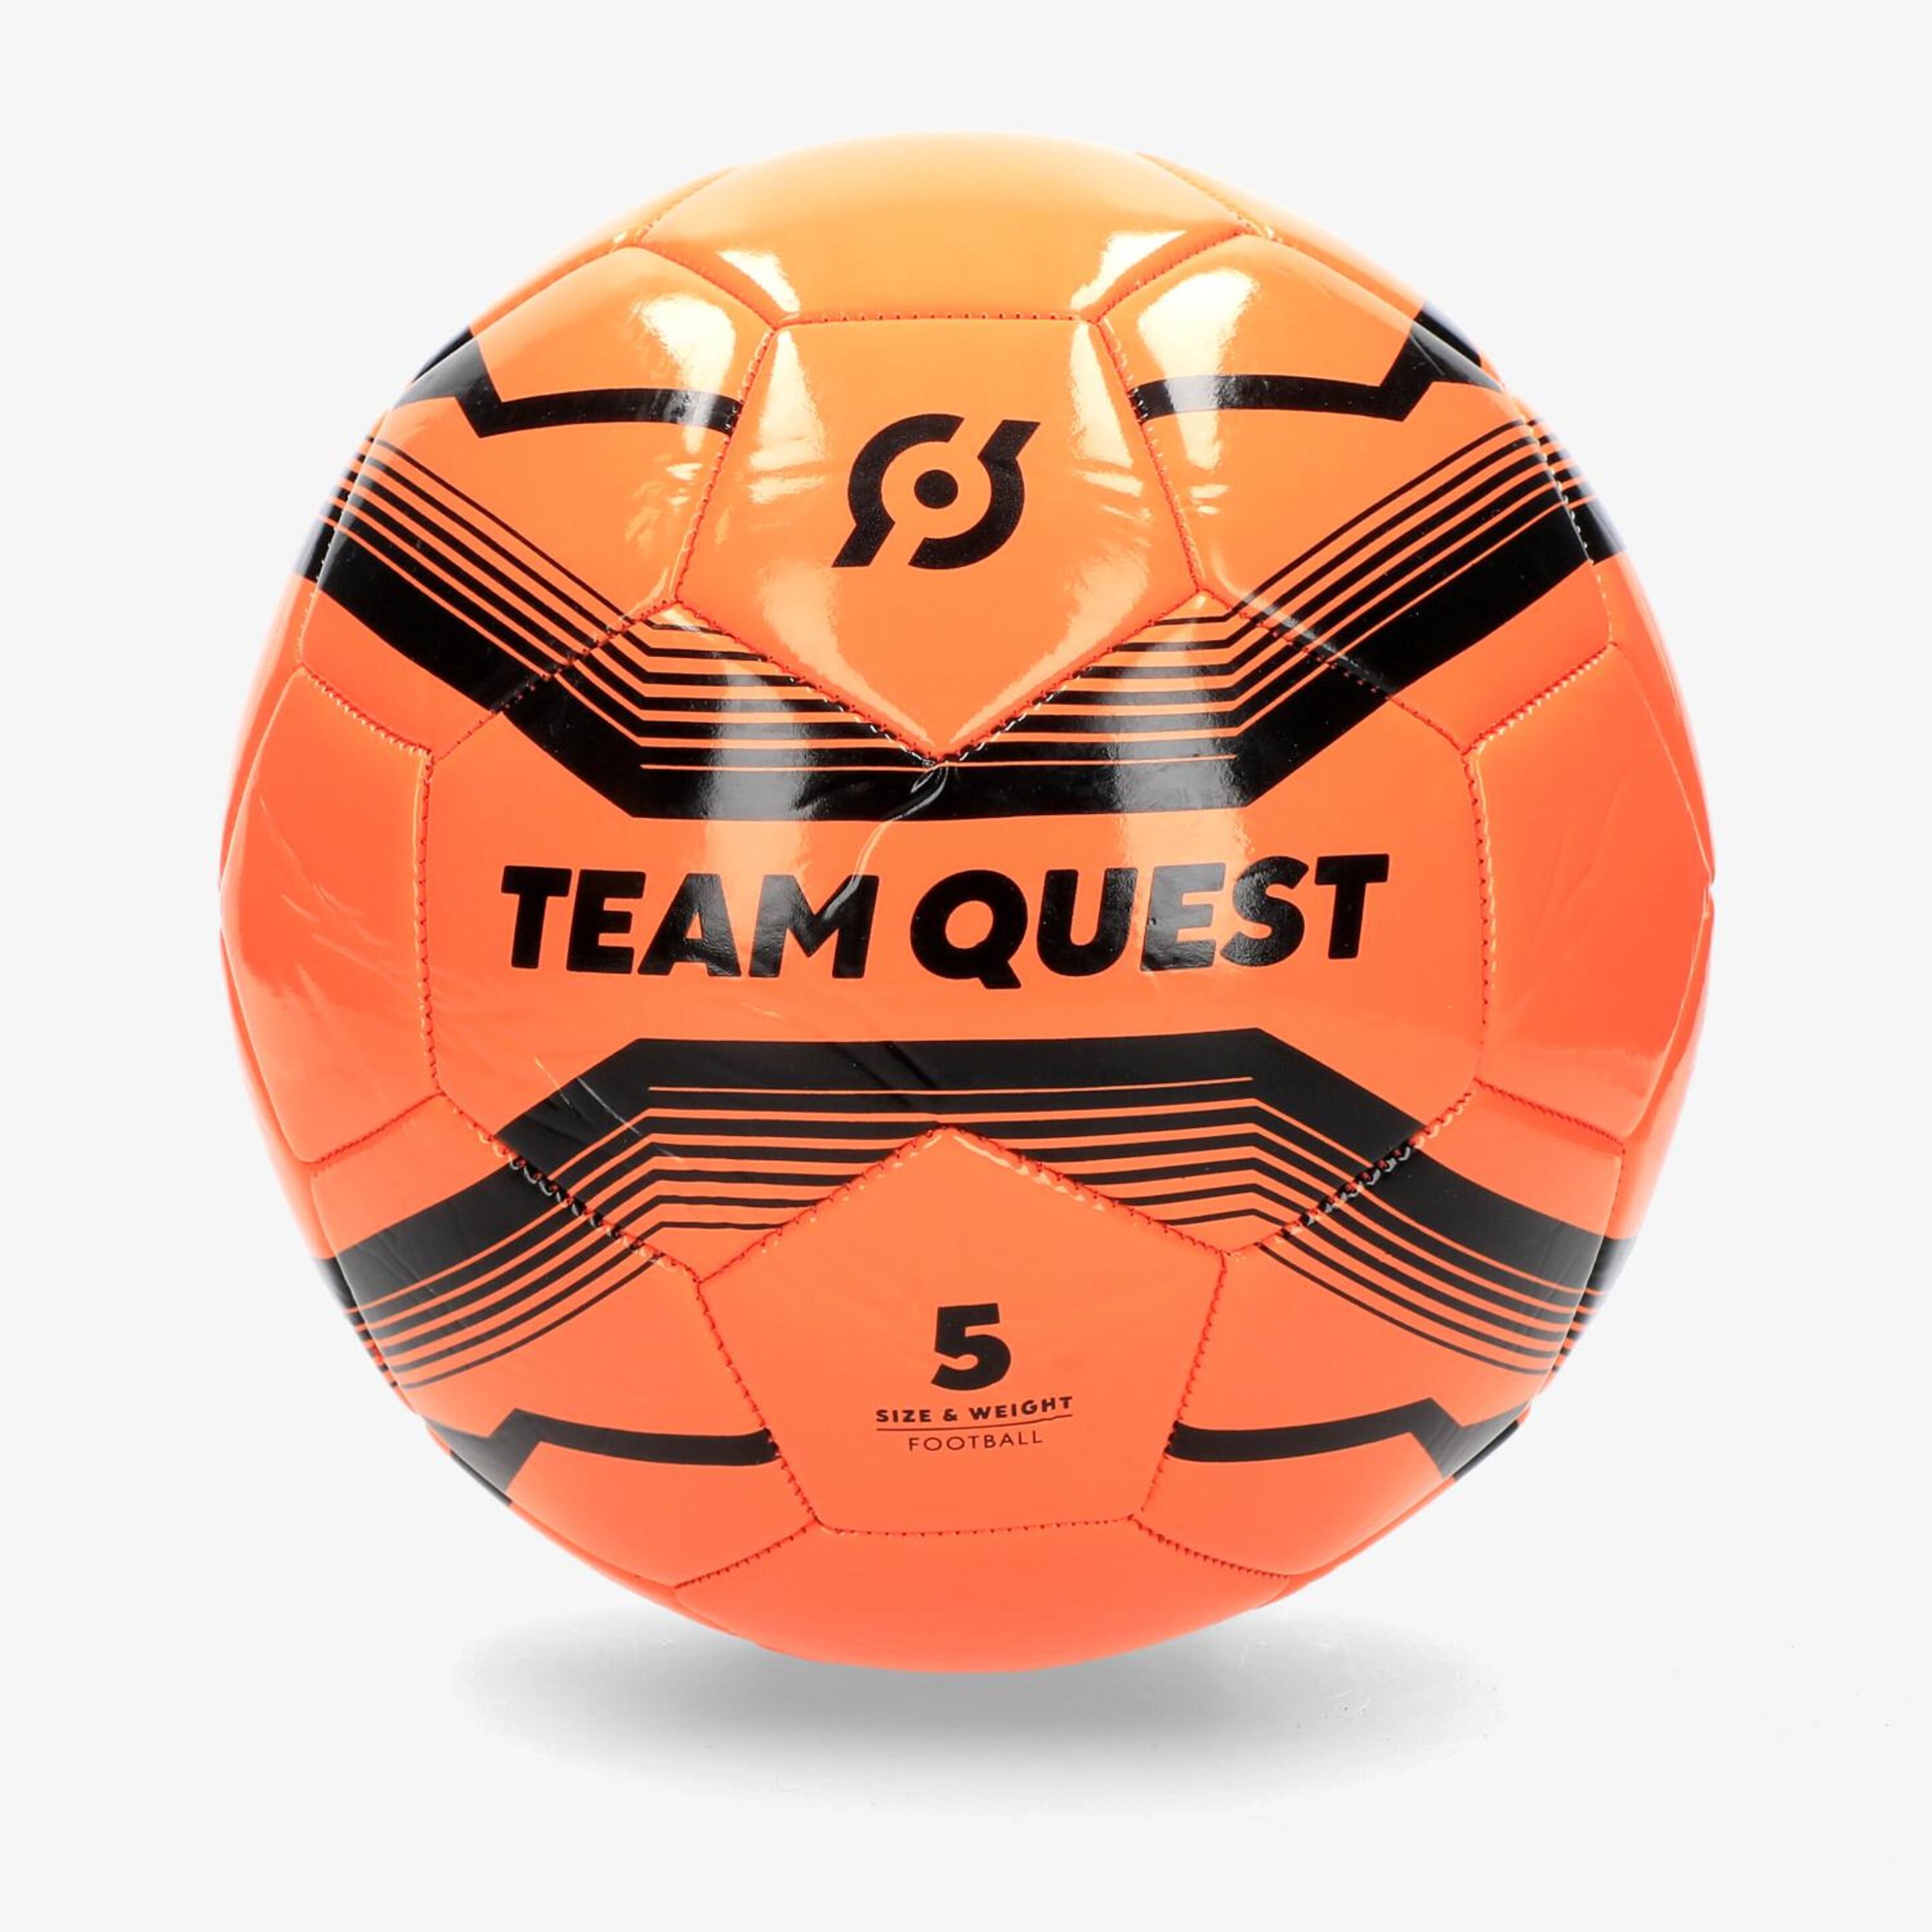 Team Quest - naranja - Bola Futebol